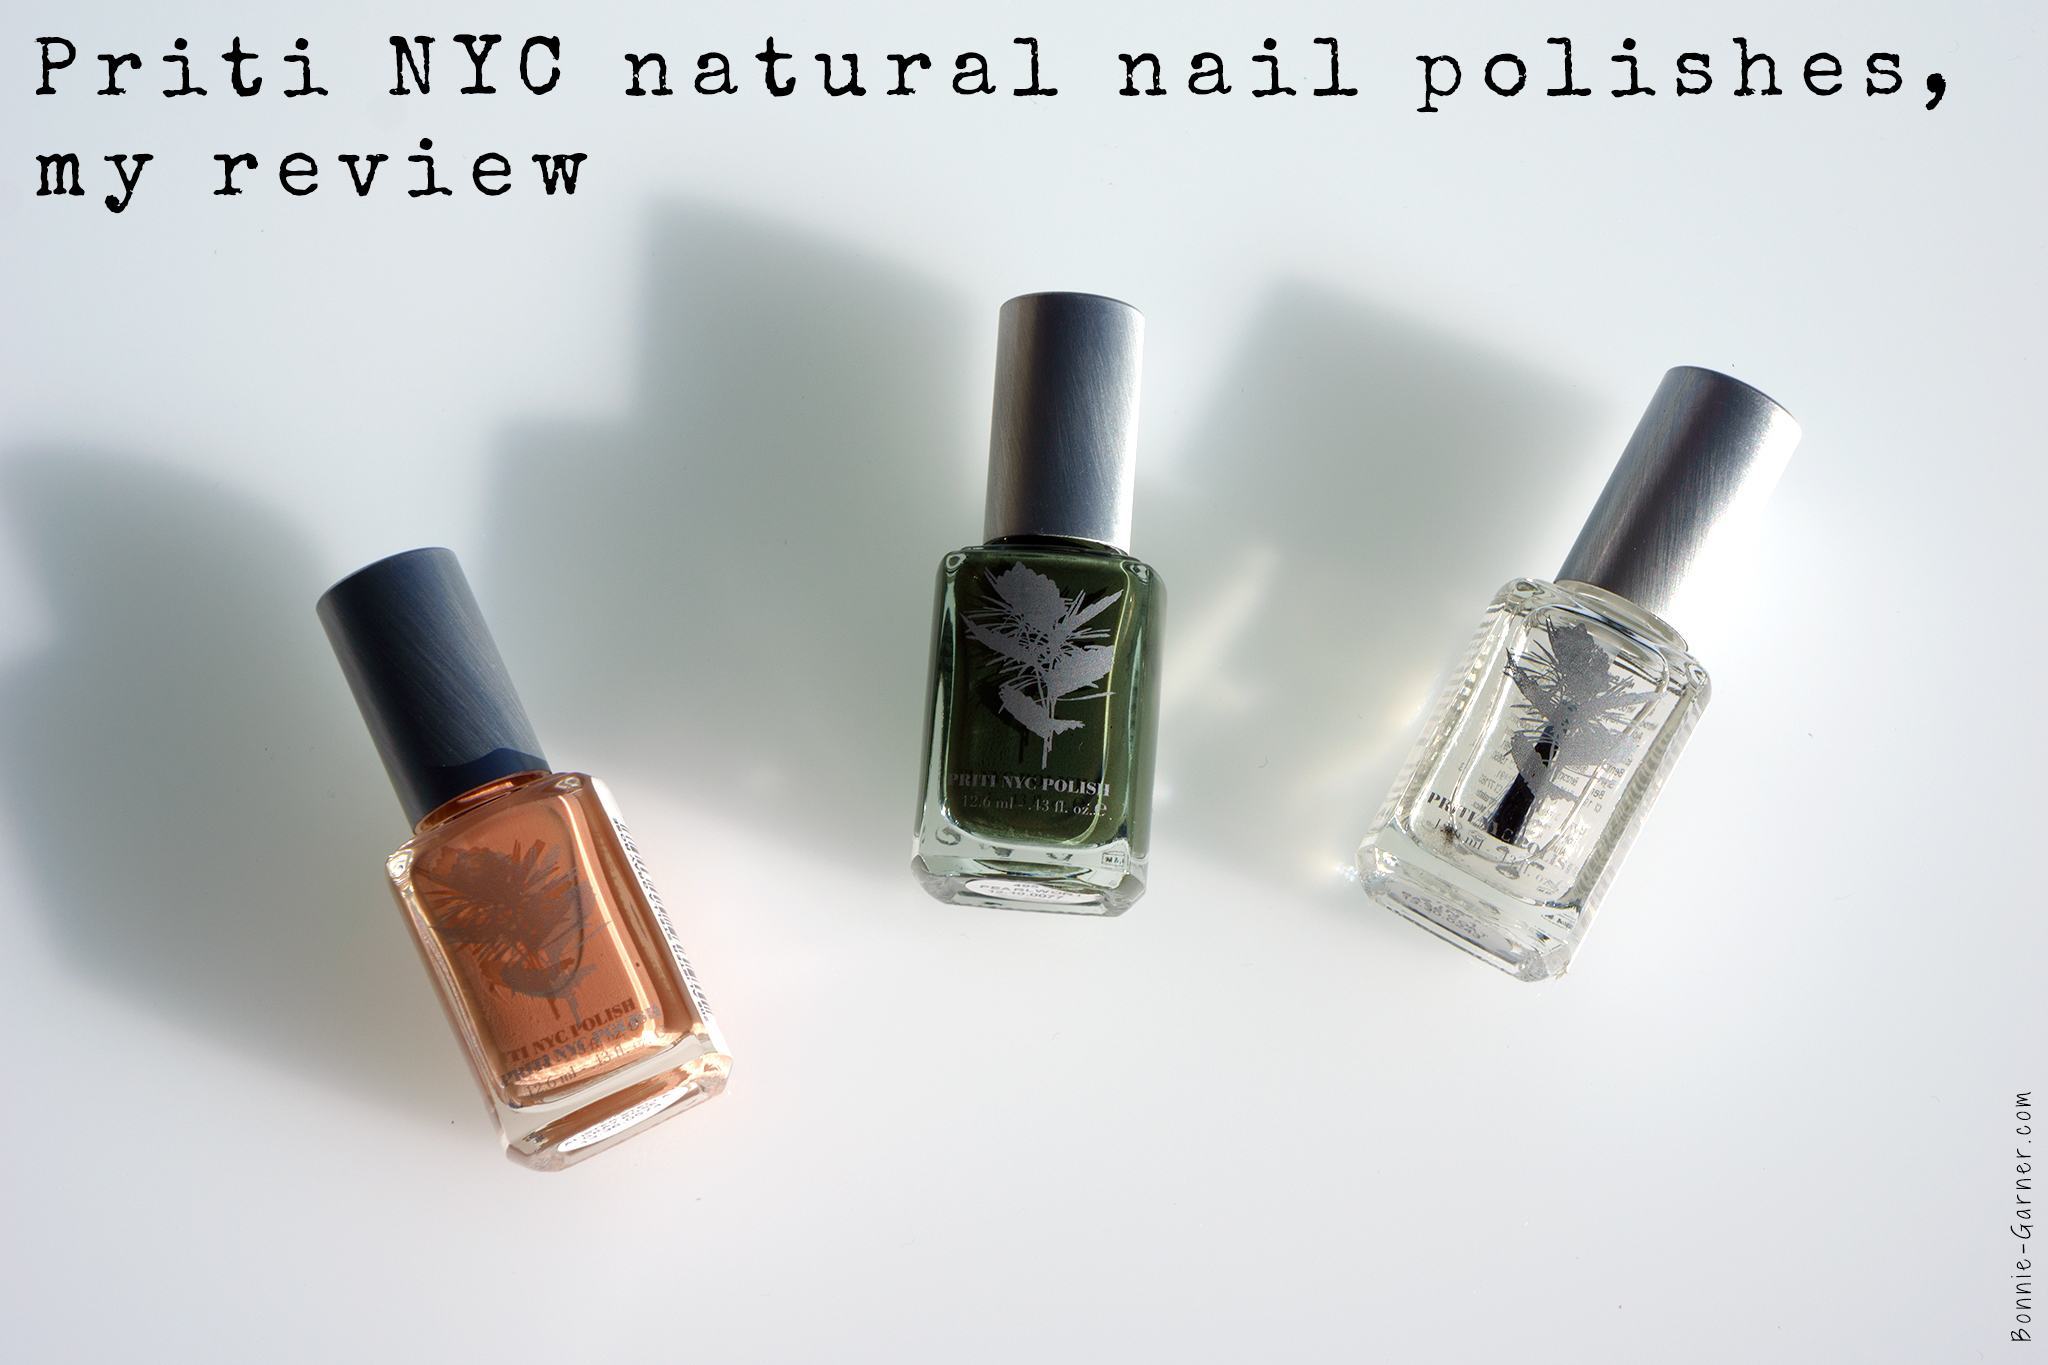 Priti NYC natural nail polishes, my review | Bonnie Garner ...